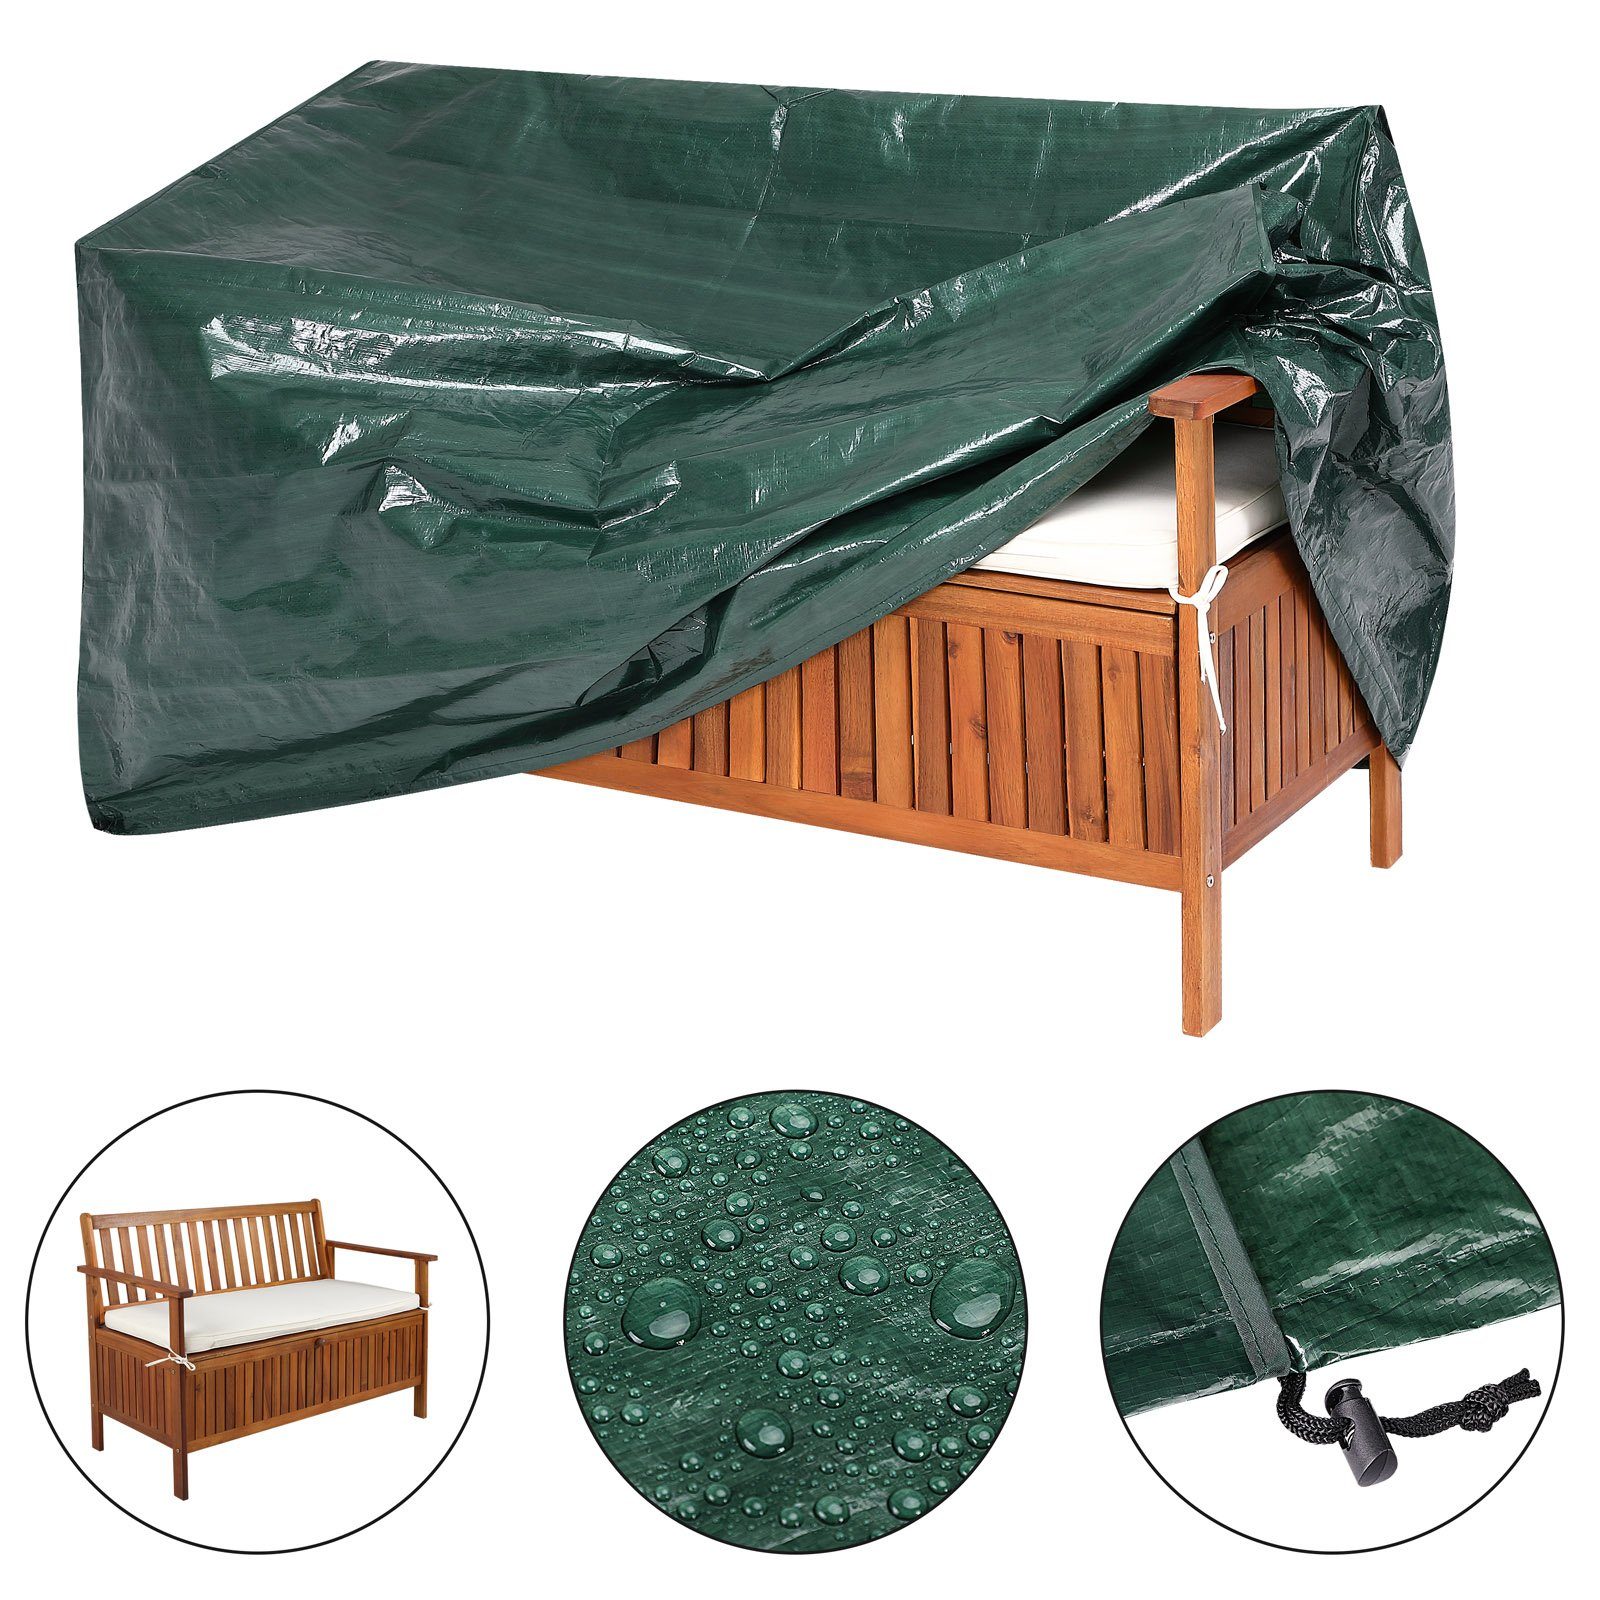 Schutzhülle für Gartenmöbel Stappelstühle Sitzbank Abdeckplane Hülle Regenschutz 